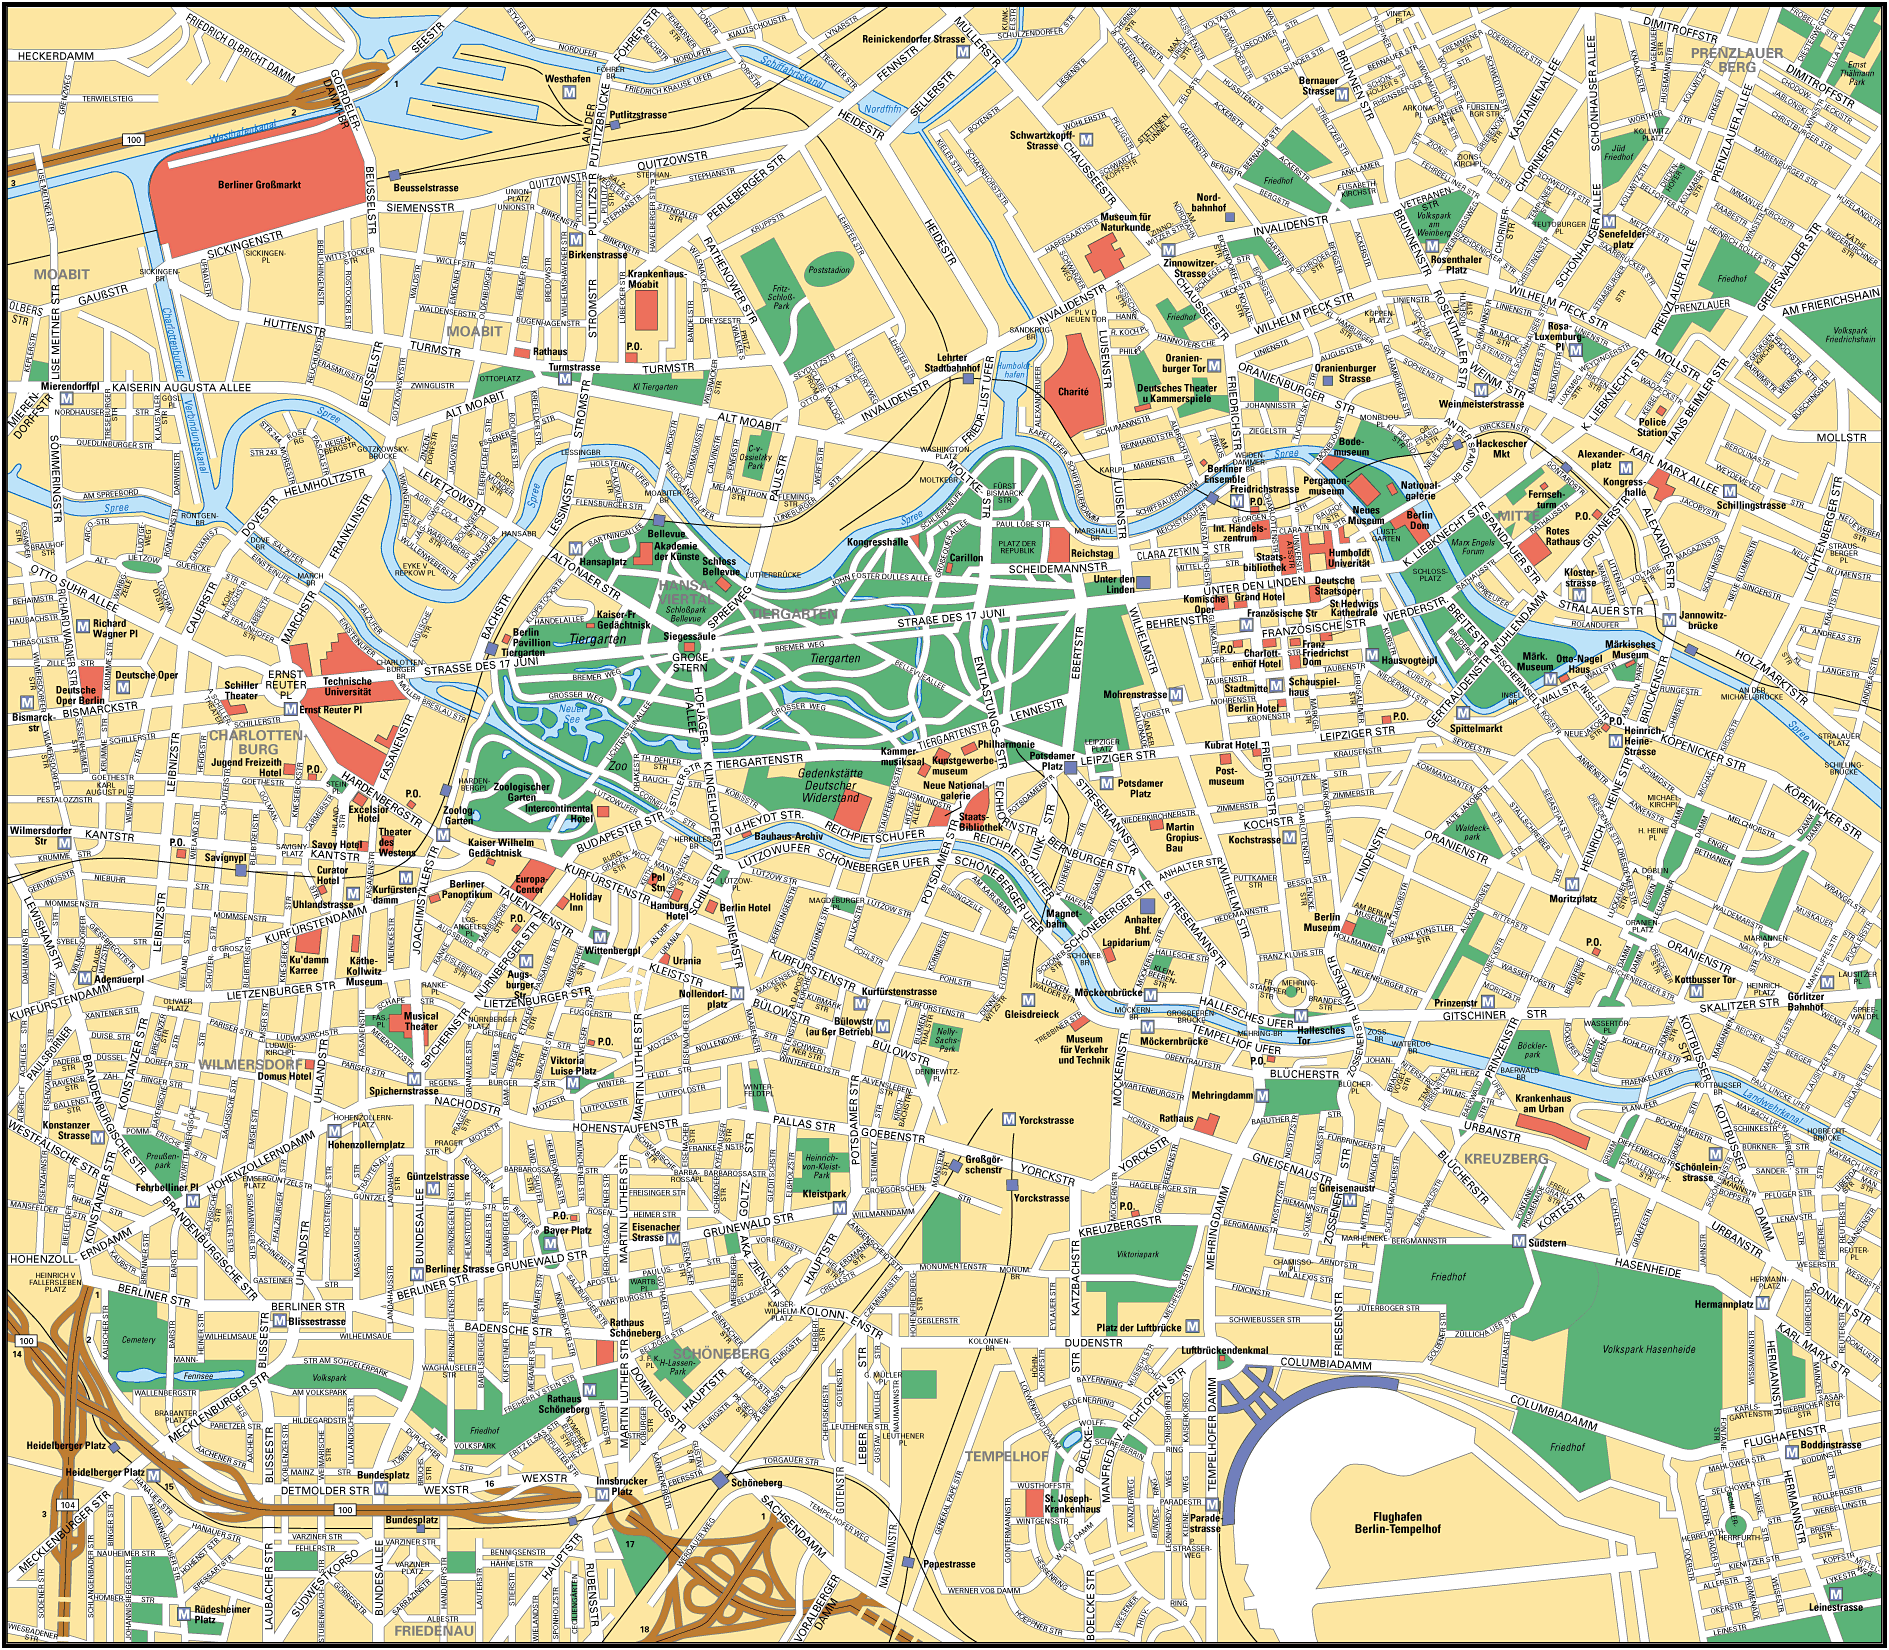 Stadtplan Berlin